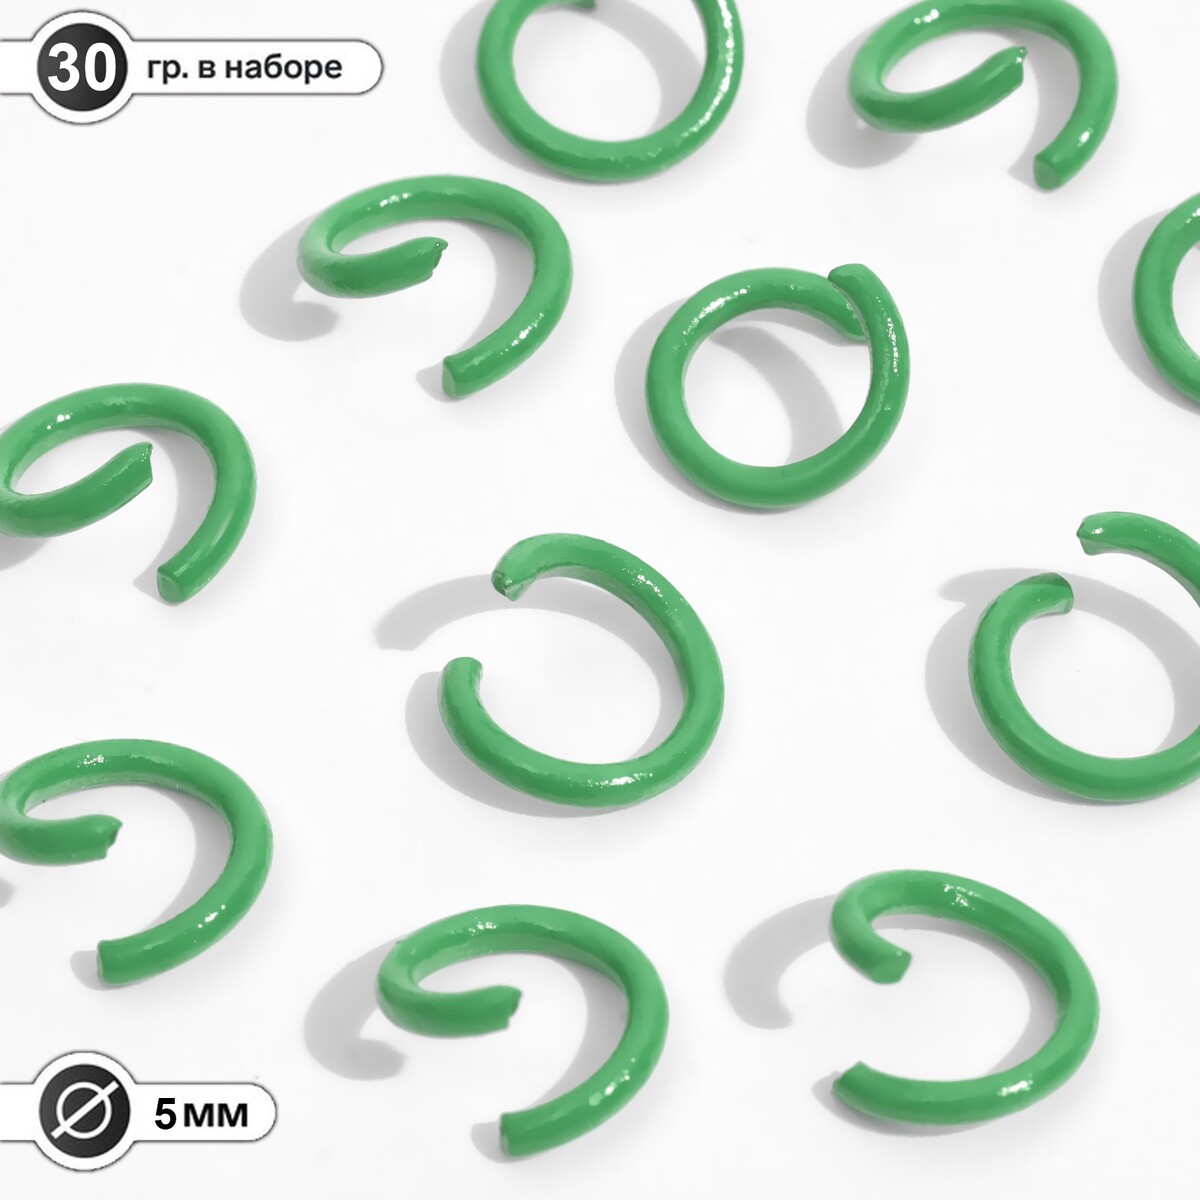 Кольцо соединительное, разъемное d=5 мм, (набор 30 г), цвет светло-зеленый эспандер кольцо 20 кг h180701 20mg зеленый